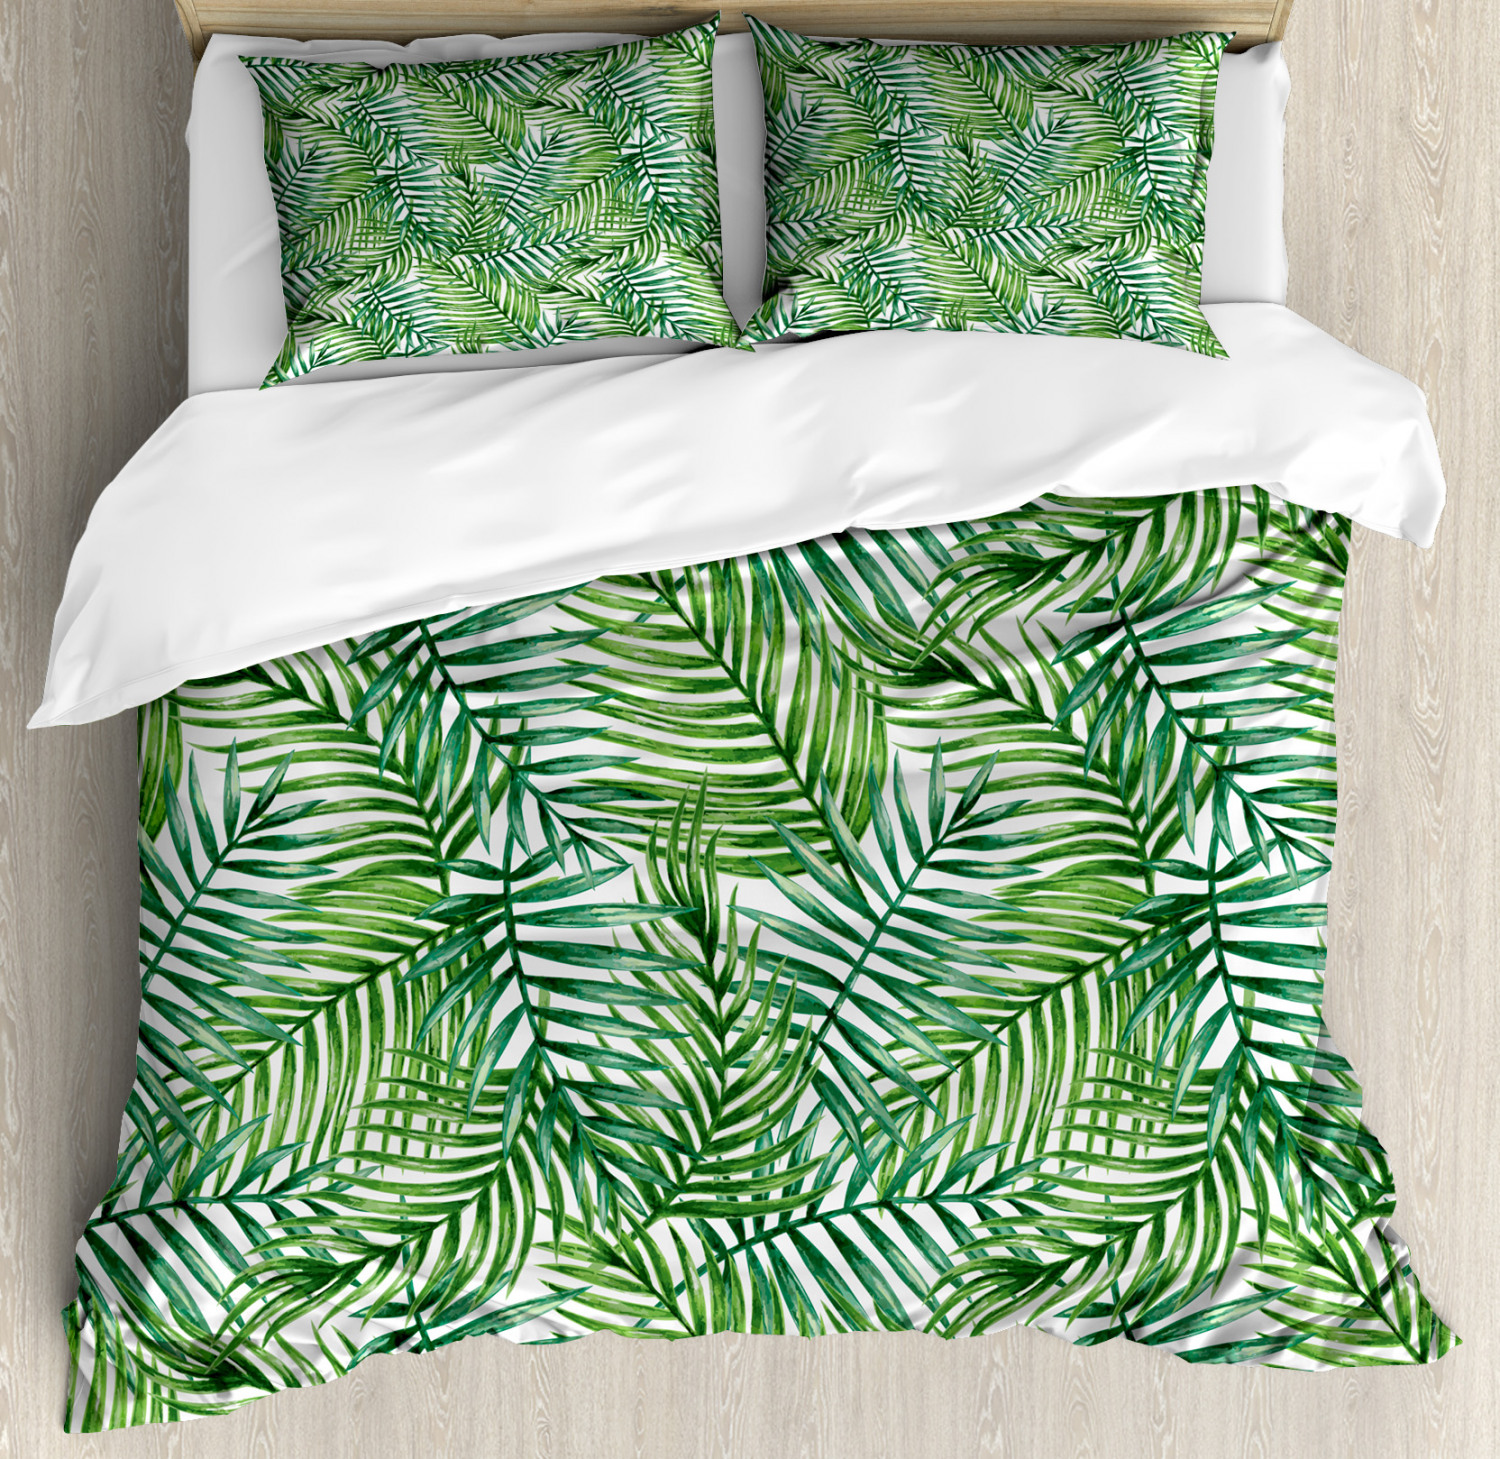 Leaf Bettbezug Mit Kissen Shams Botanische Wilde Palmen Print Ebay